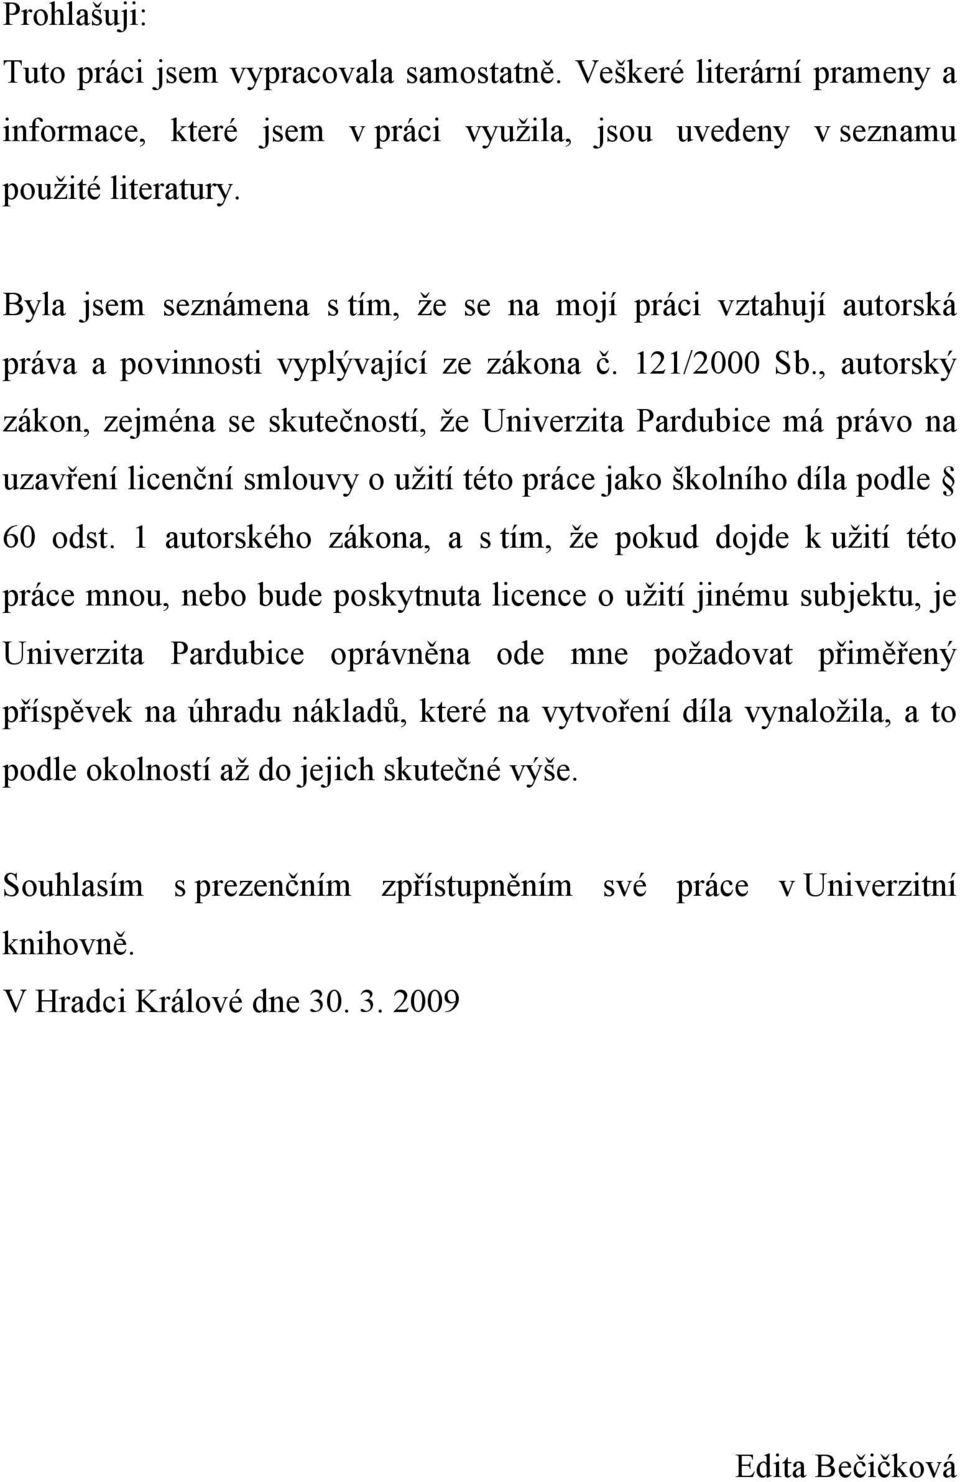 , autorský zákon, zejména se skutečností, že Univerzita Pardubice má právo na uzavření licenční smlouvy o užití této práce jako školního díla podle 60 odst.